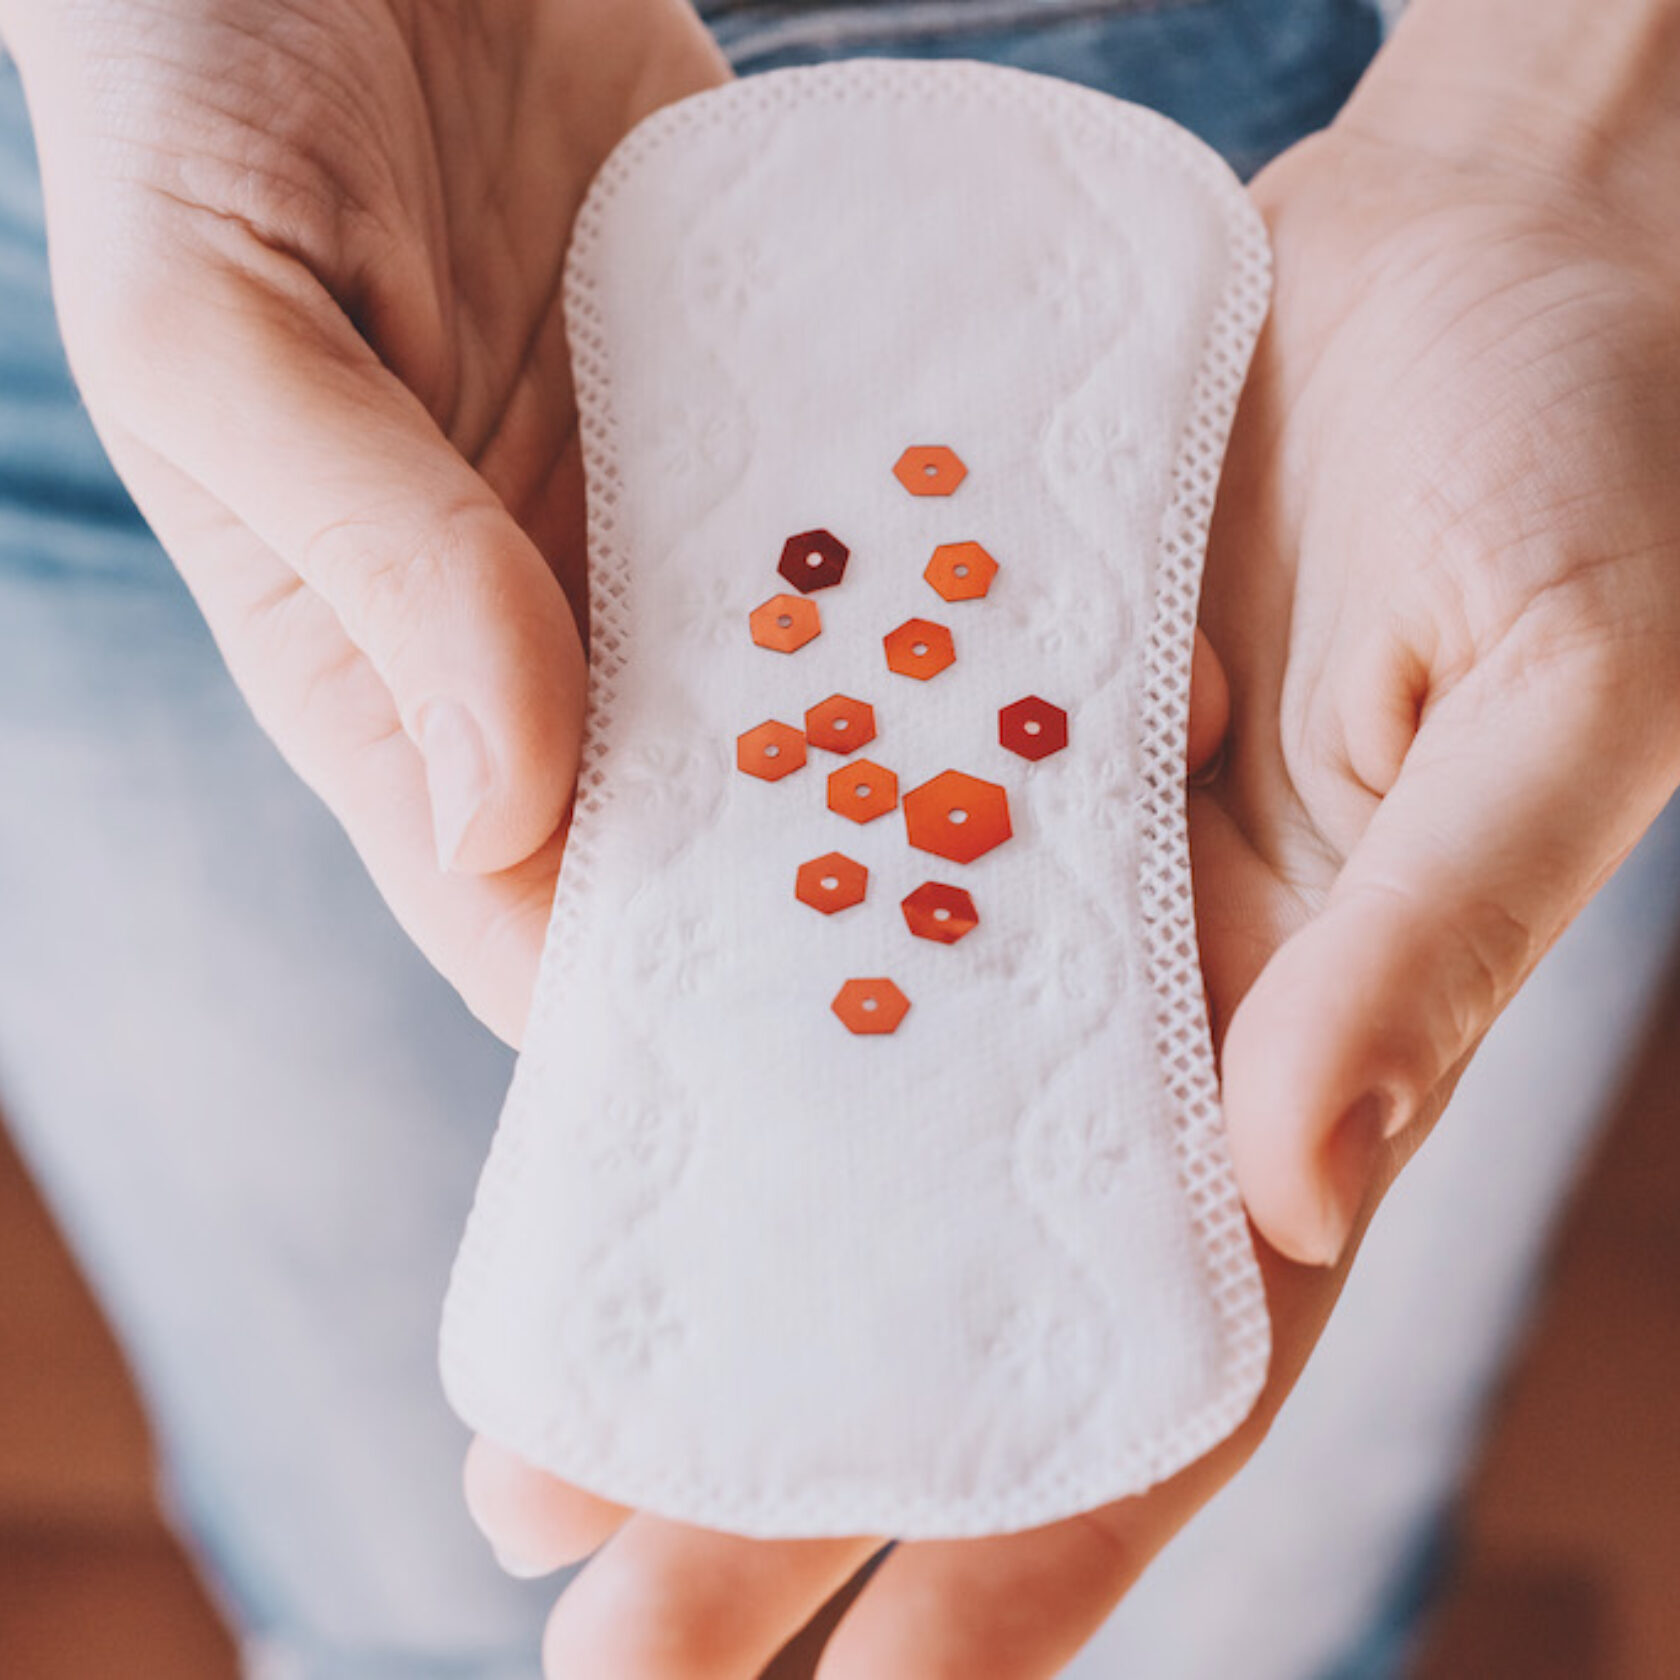 Eine Slipeinlage mit daraufgestreuten roten Partikeln als Symbol für die Menstruationsblutung